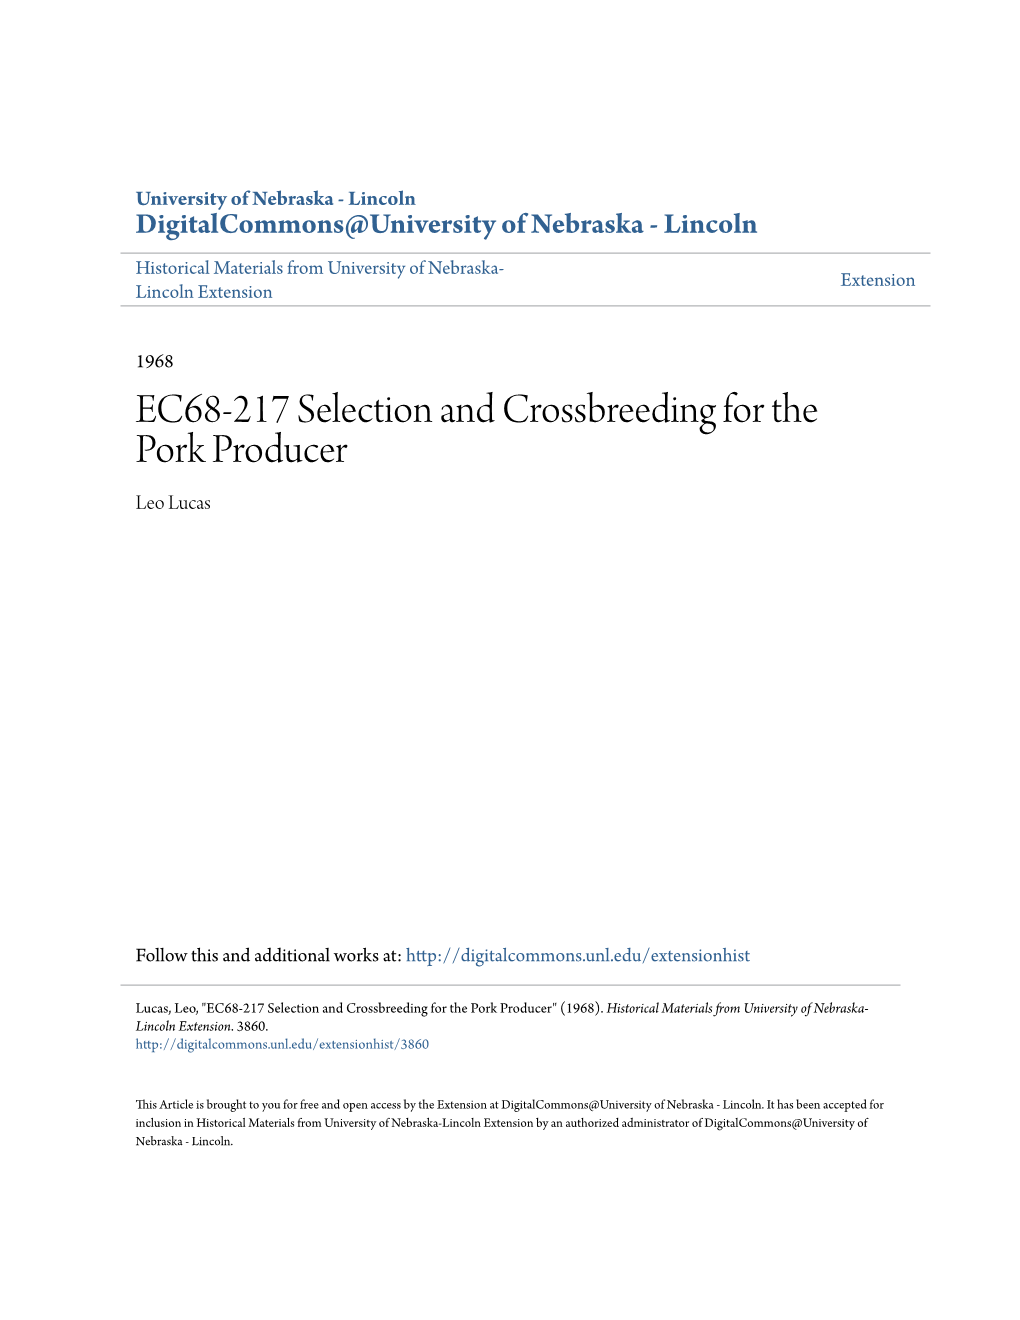 EC68-217 Selection and Crossbreeding for the Pork Producer Leo Lucas